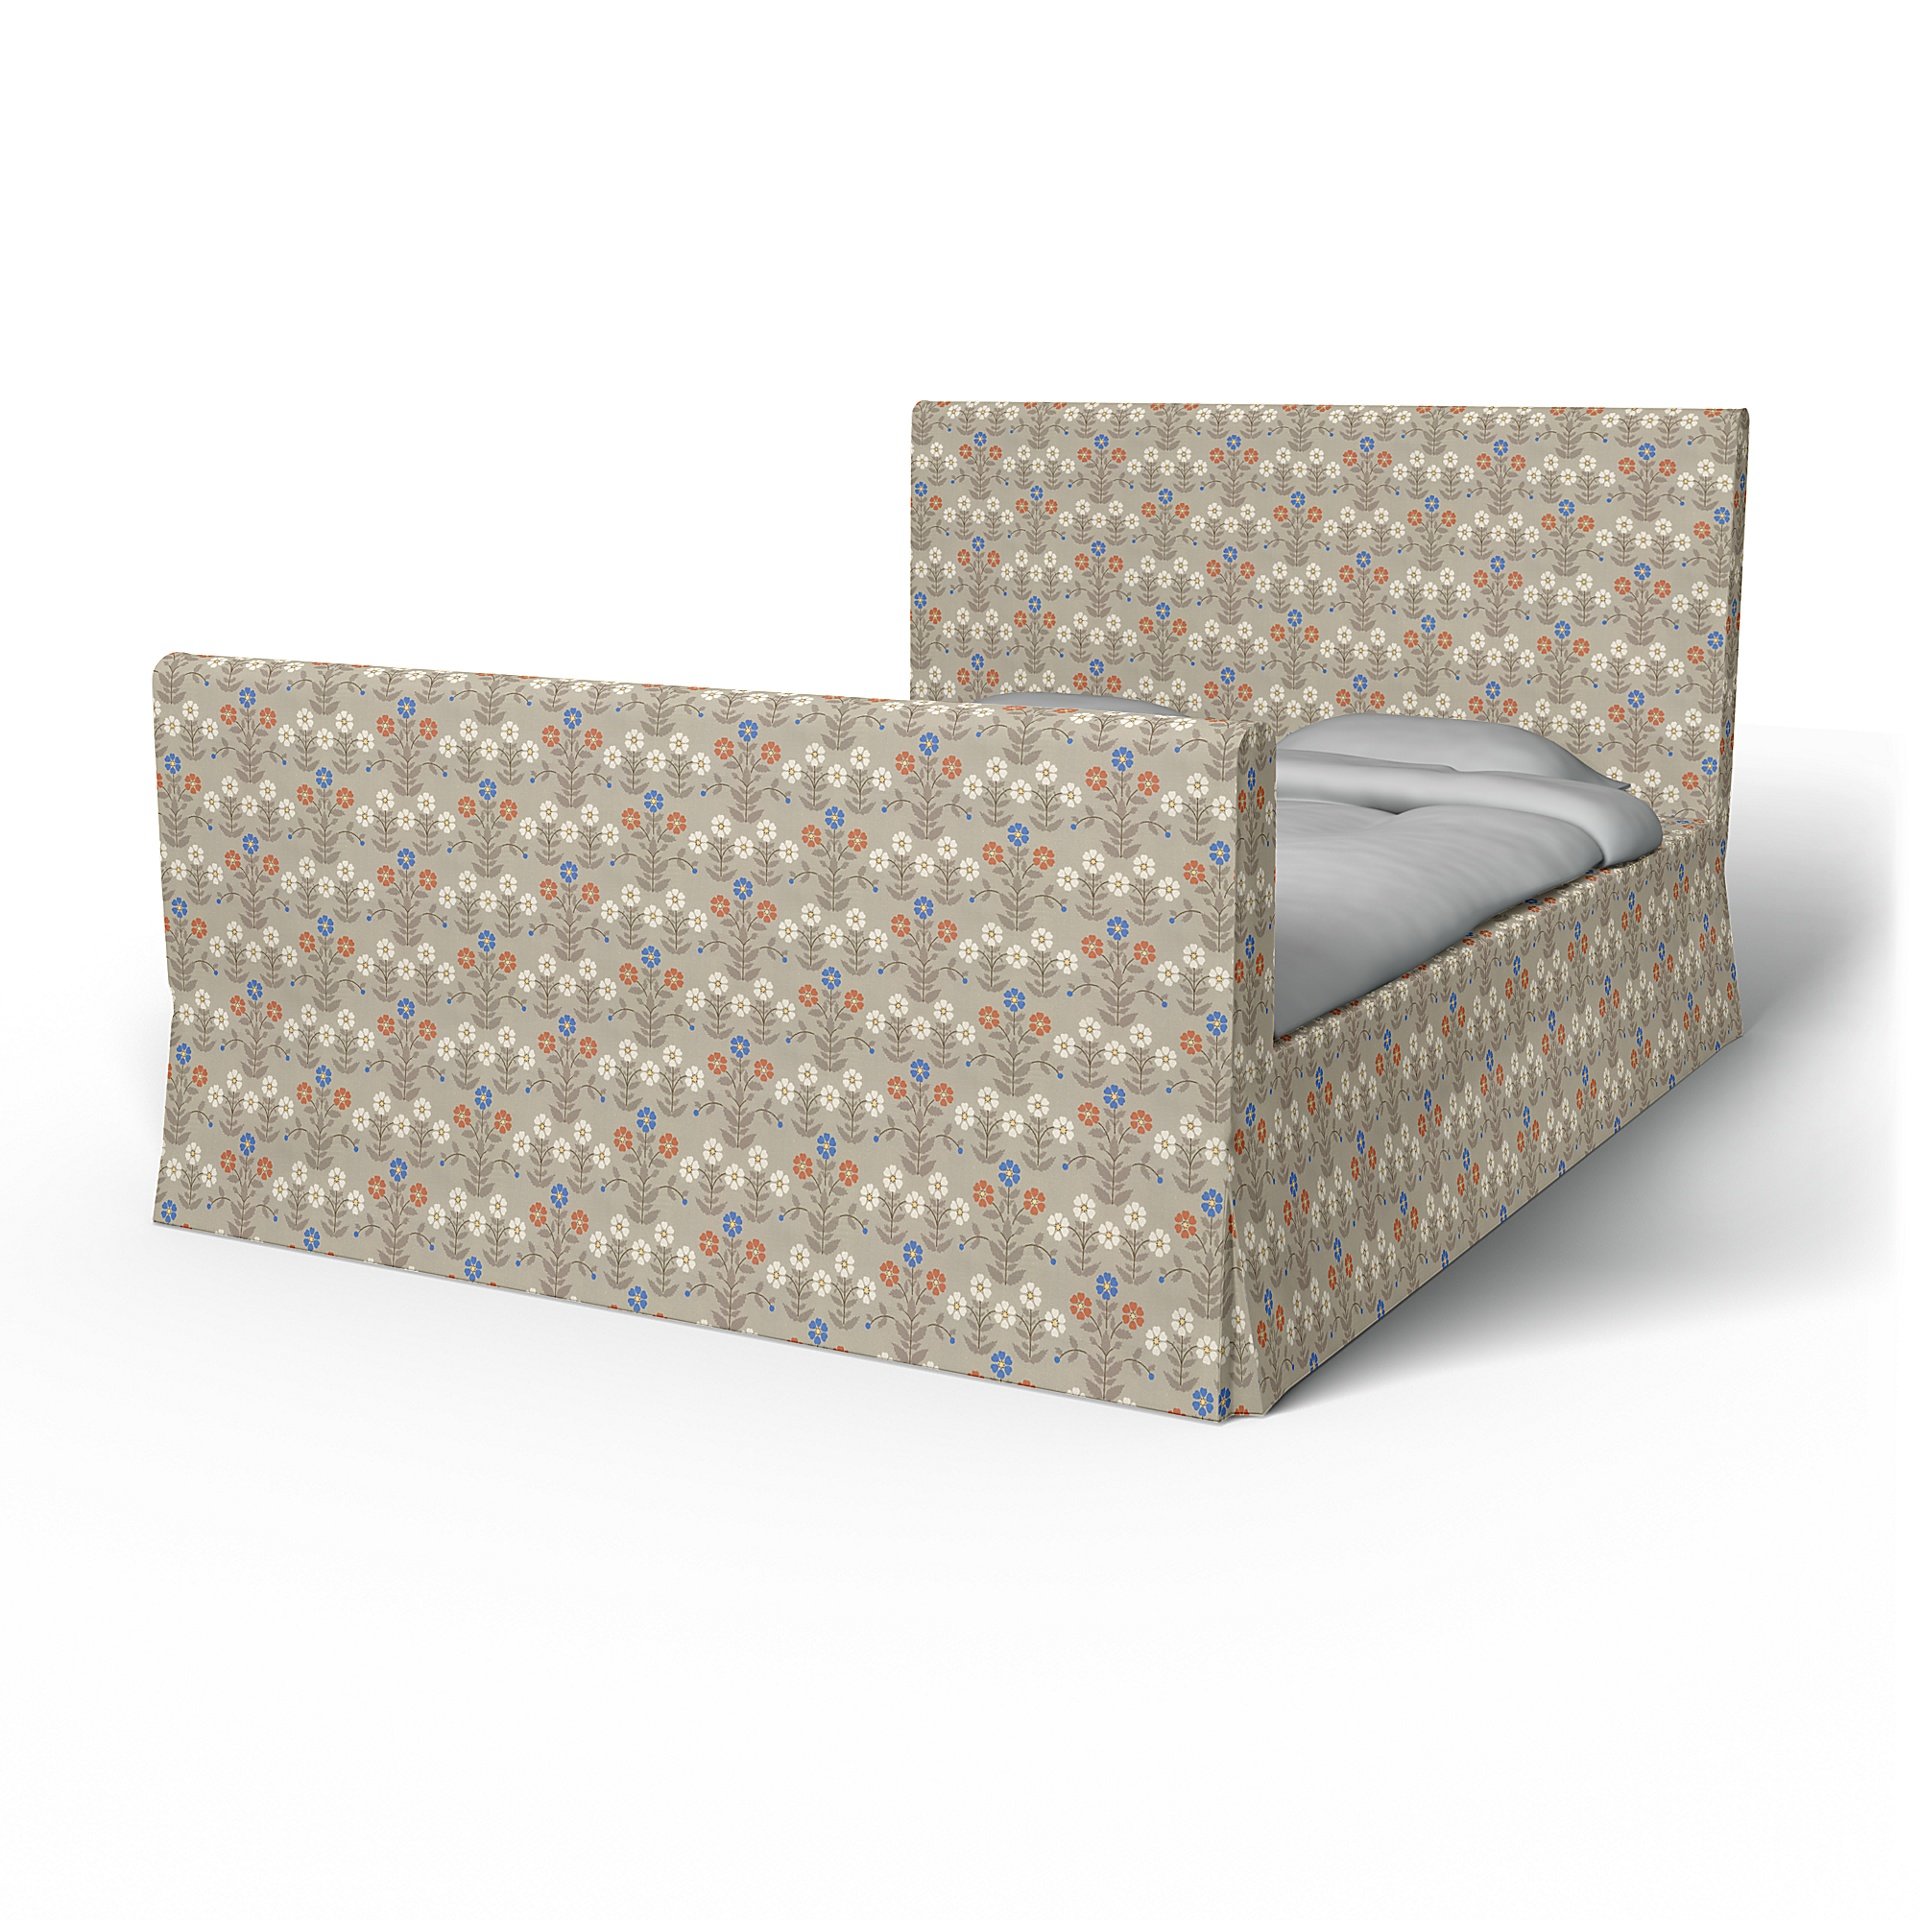 IKEA - Floro Bed Frame Cover, Sippor Blue/Orange, BEMZ x BORASTAPETER COLLECTION - Bemz